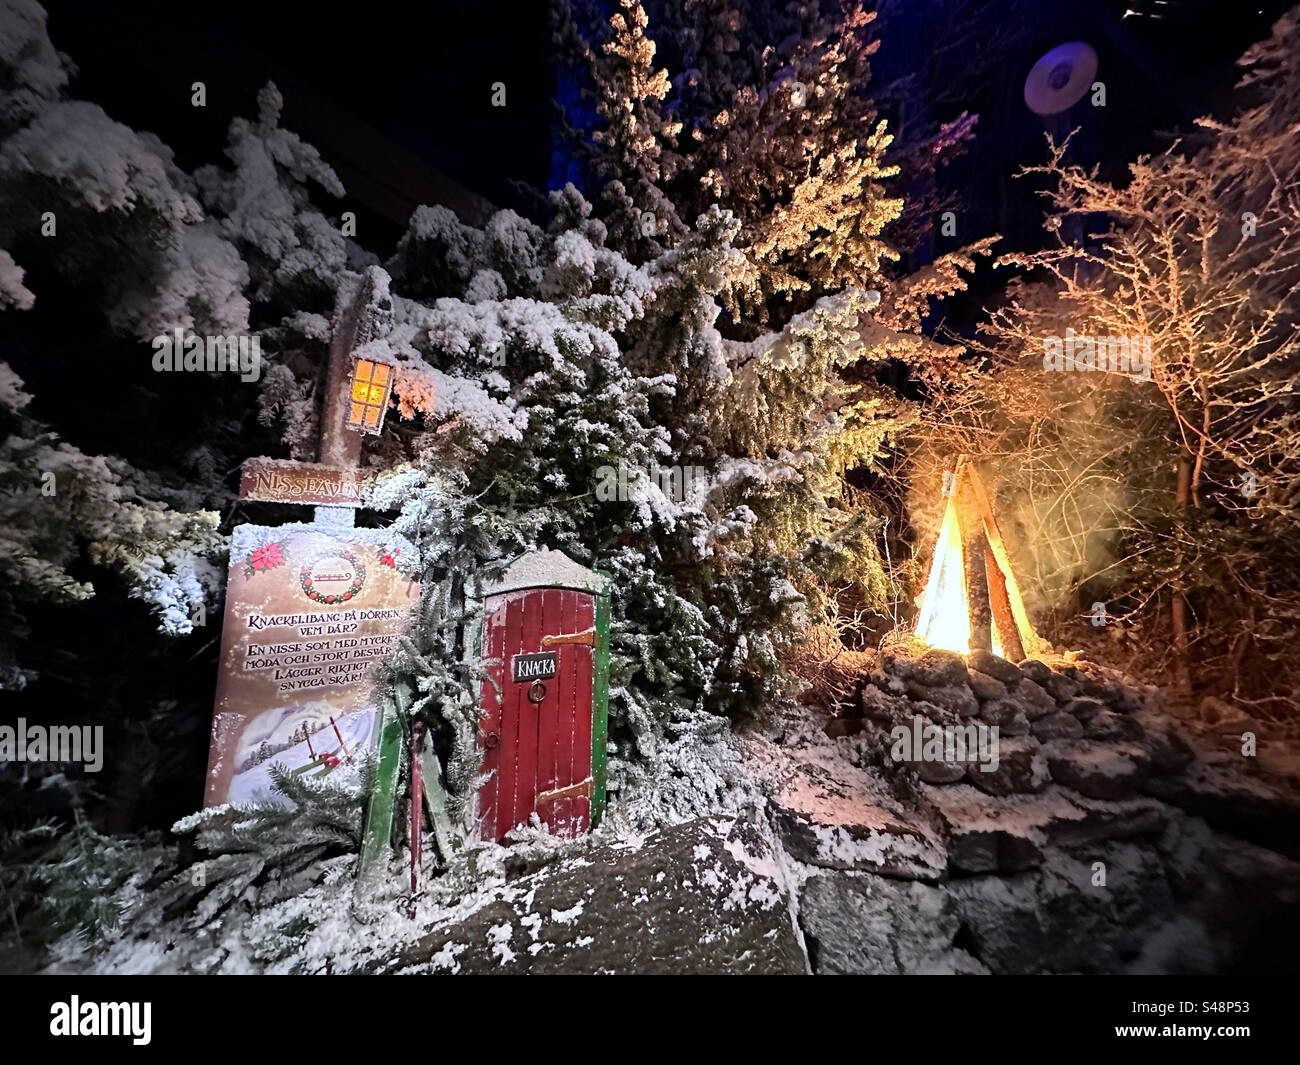 Una porta in miniatura e un falso fuoco incendiati in una scena invernale al parco a tema Liseberg a Gothenburg, Svezia. Foto Stock